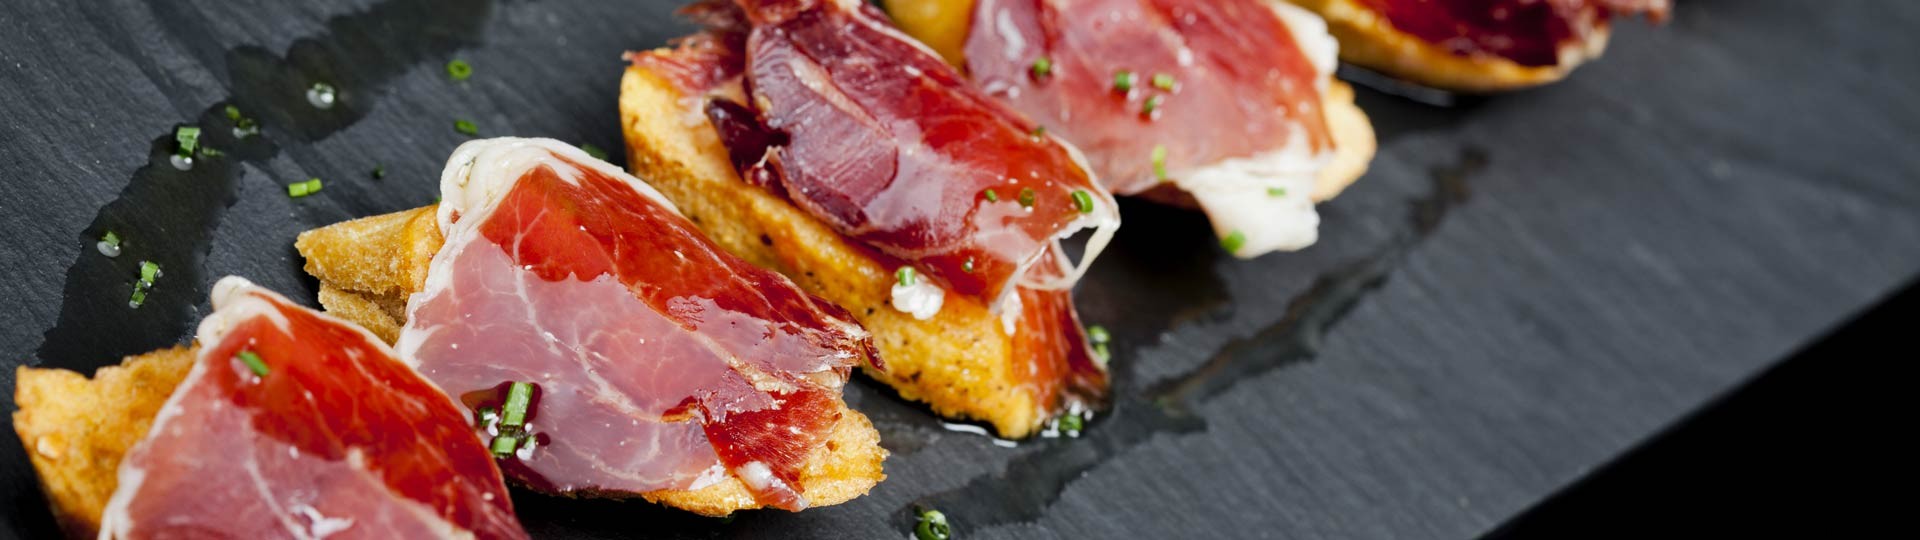 pecinta kuliner, bersiaplah untuk terpesona:12 distrik bar tapas terbaik di Spanyol 